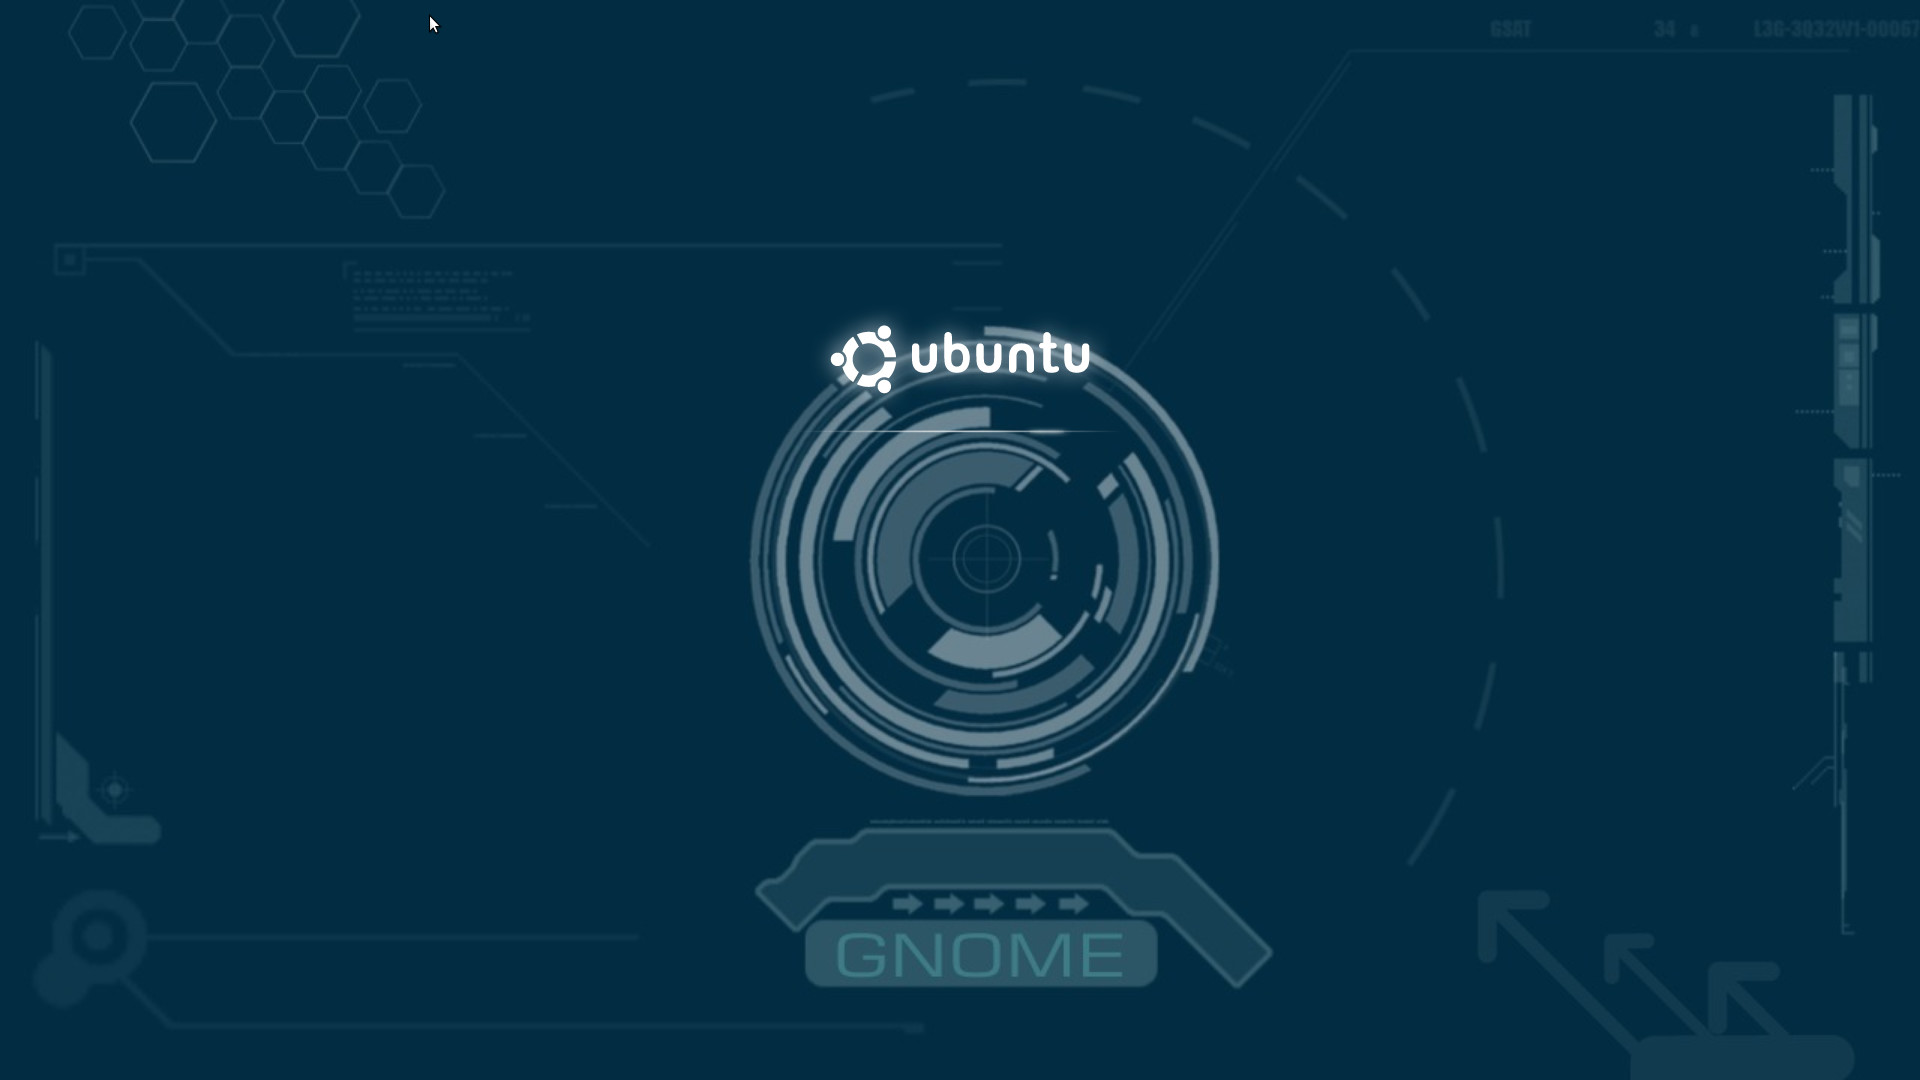 ubuntuの壁紙,テキスト,フォント,サークル,グラフィックス,グラフィックデザイン